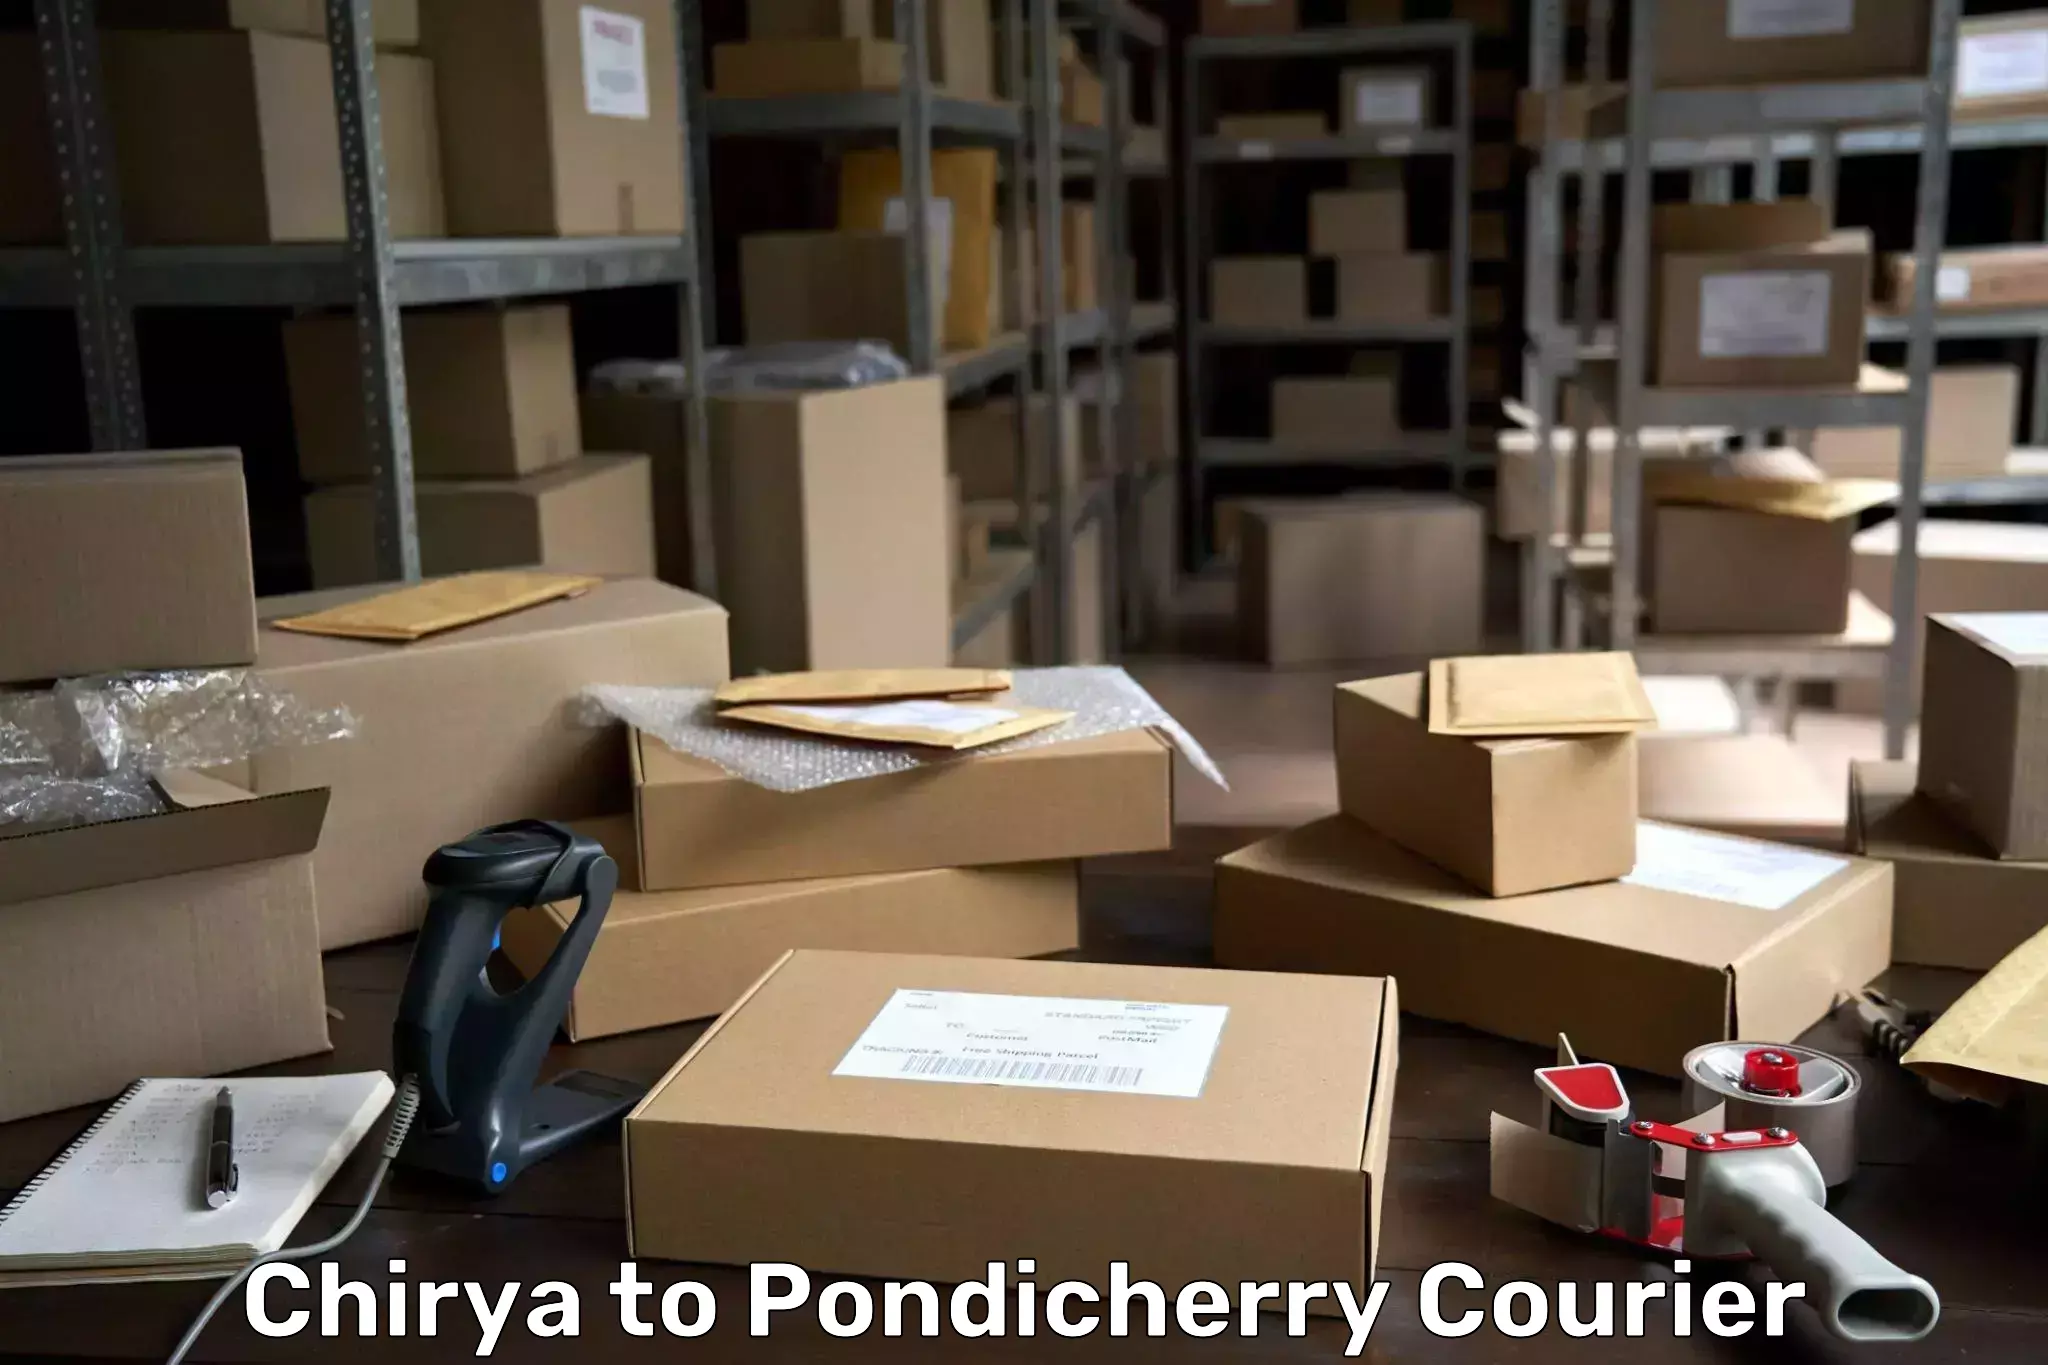 Efficient freight service Chirya to Pondicherry